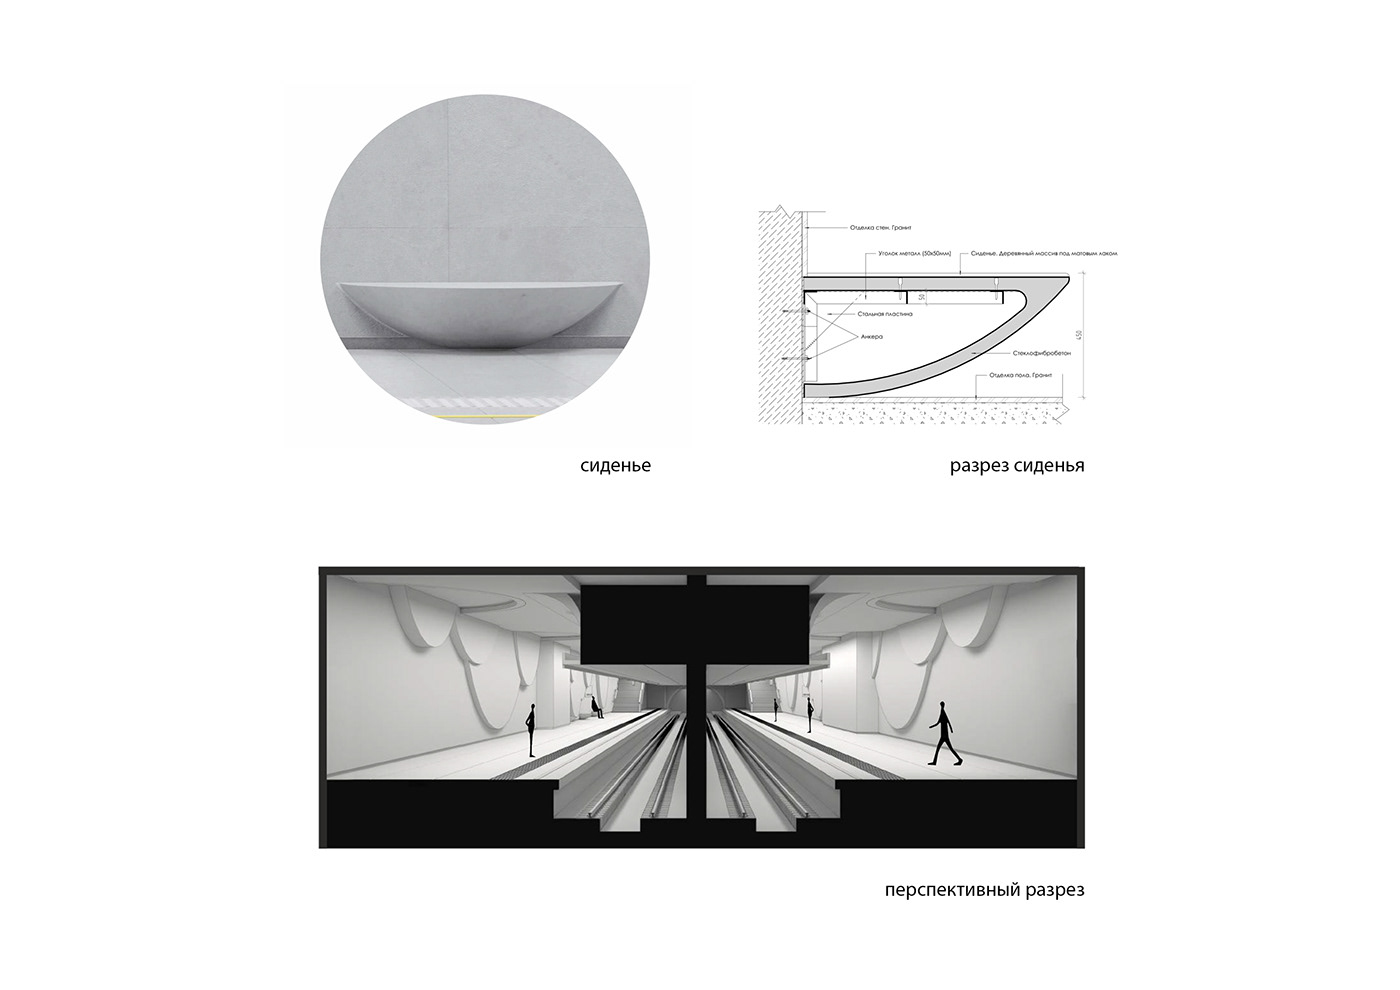 IND Architects architecture design public spaces subway concept architectural concept